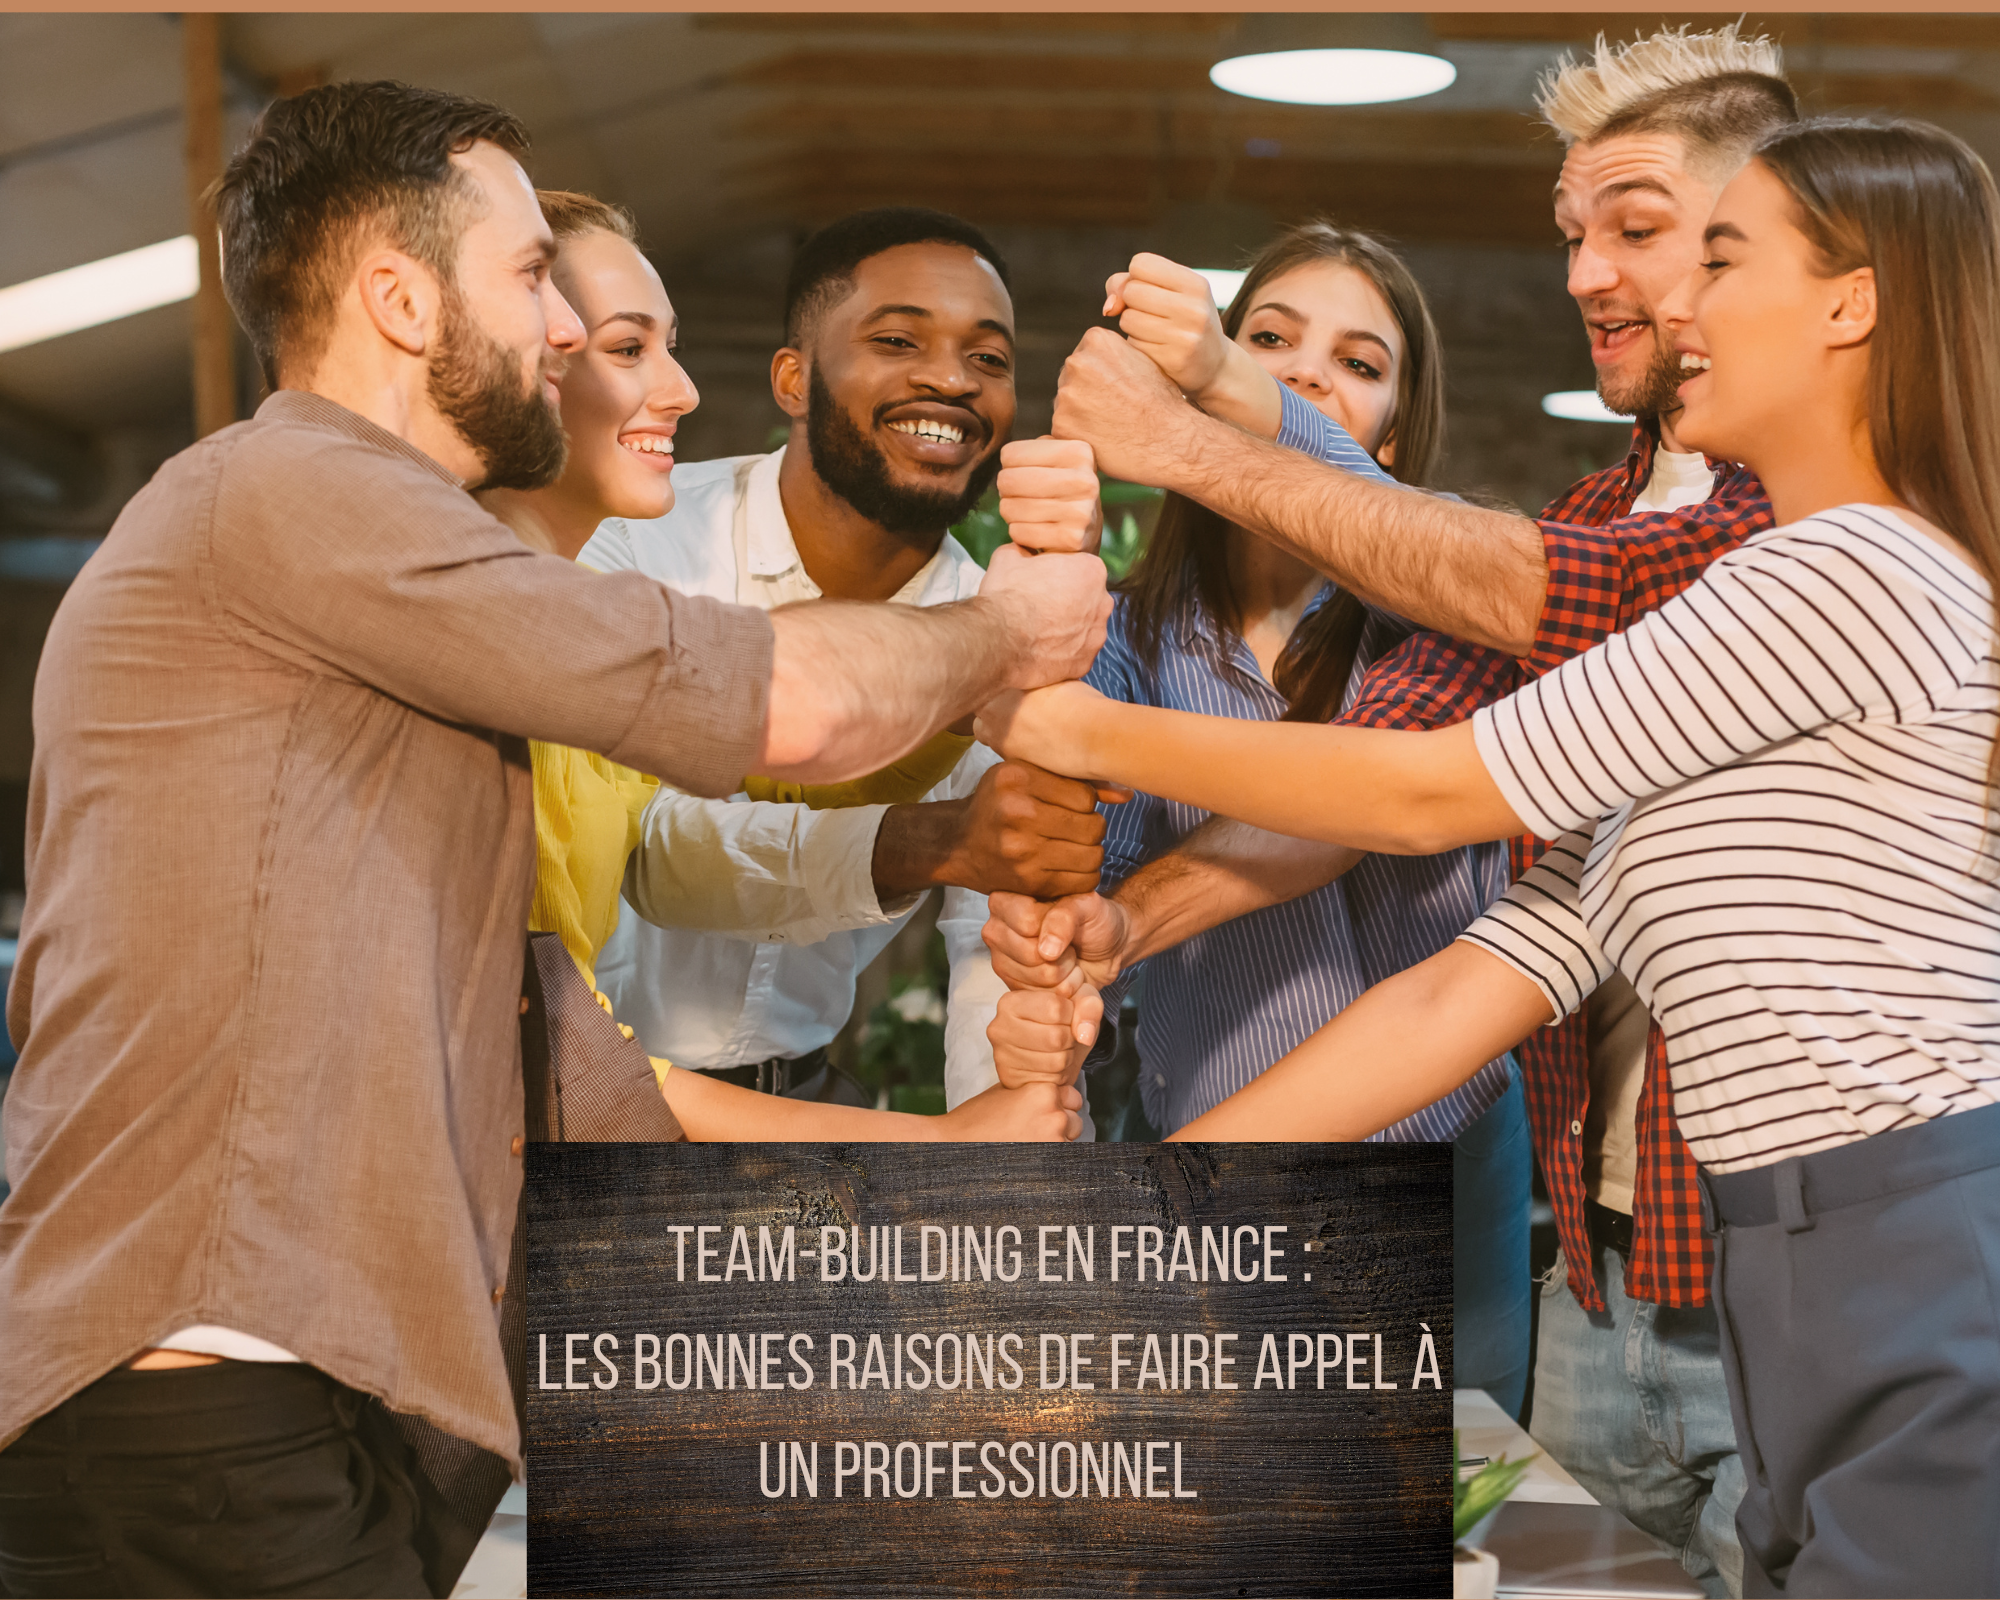 Les bonnes raisons de faire appel à un professionnel pour vos team-buildings en France